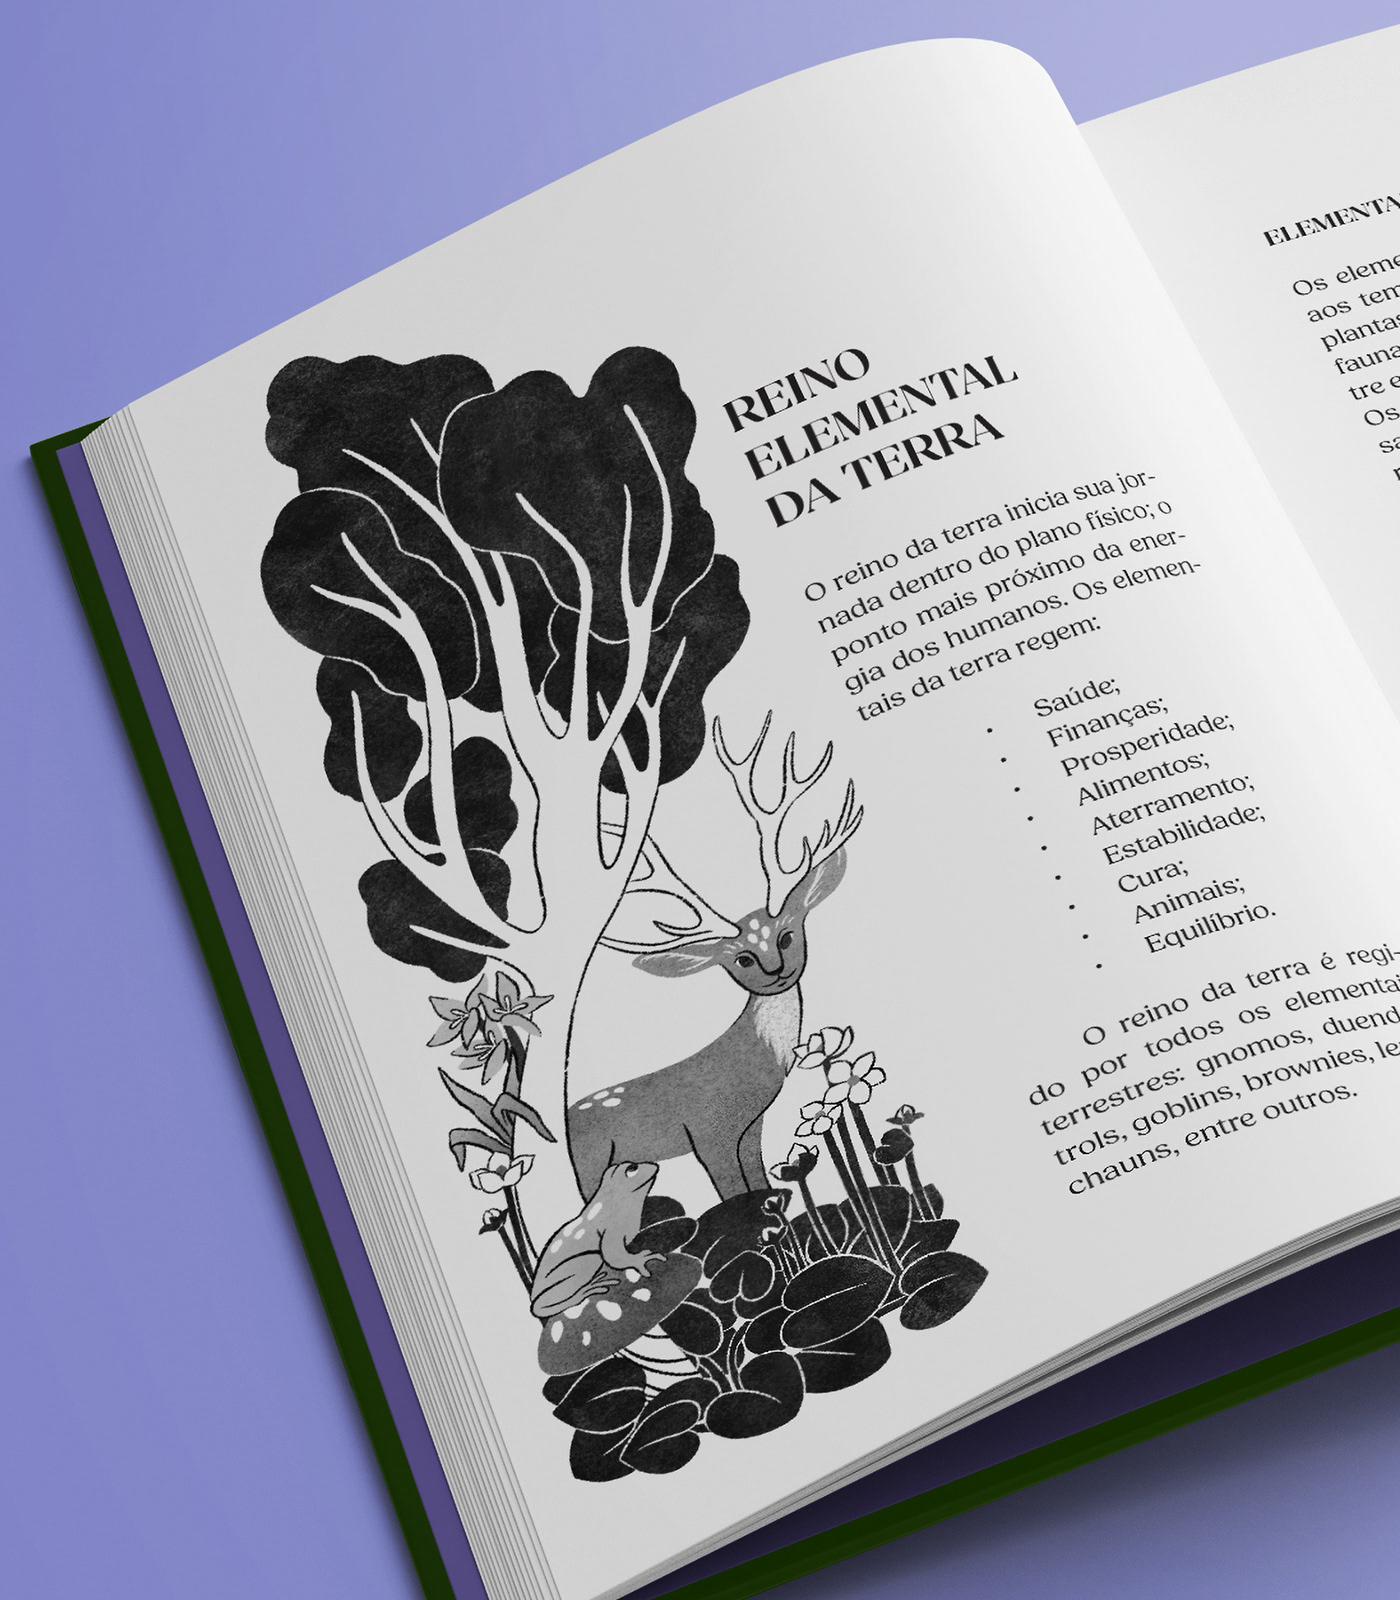 ILLUSTRATION  book cover capa de livro Ilustração ilustração Digital ilustracion ilustración digital Procreate magia gnome